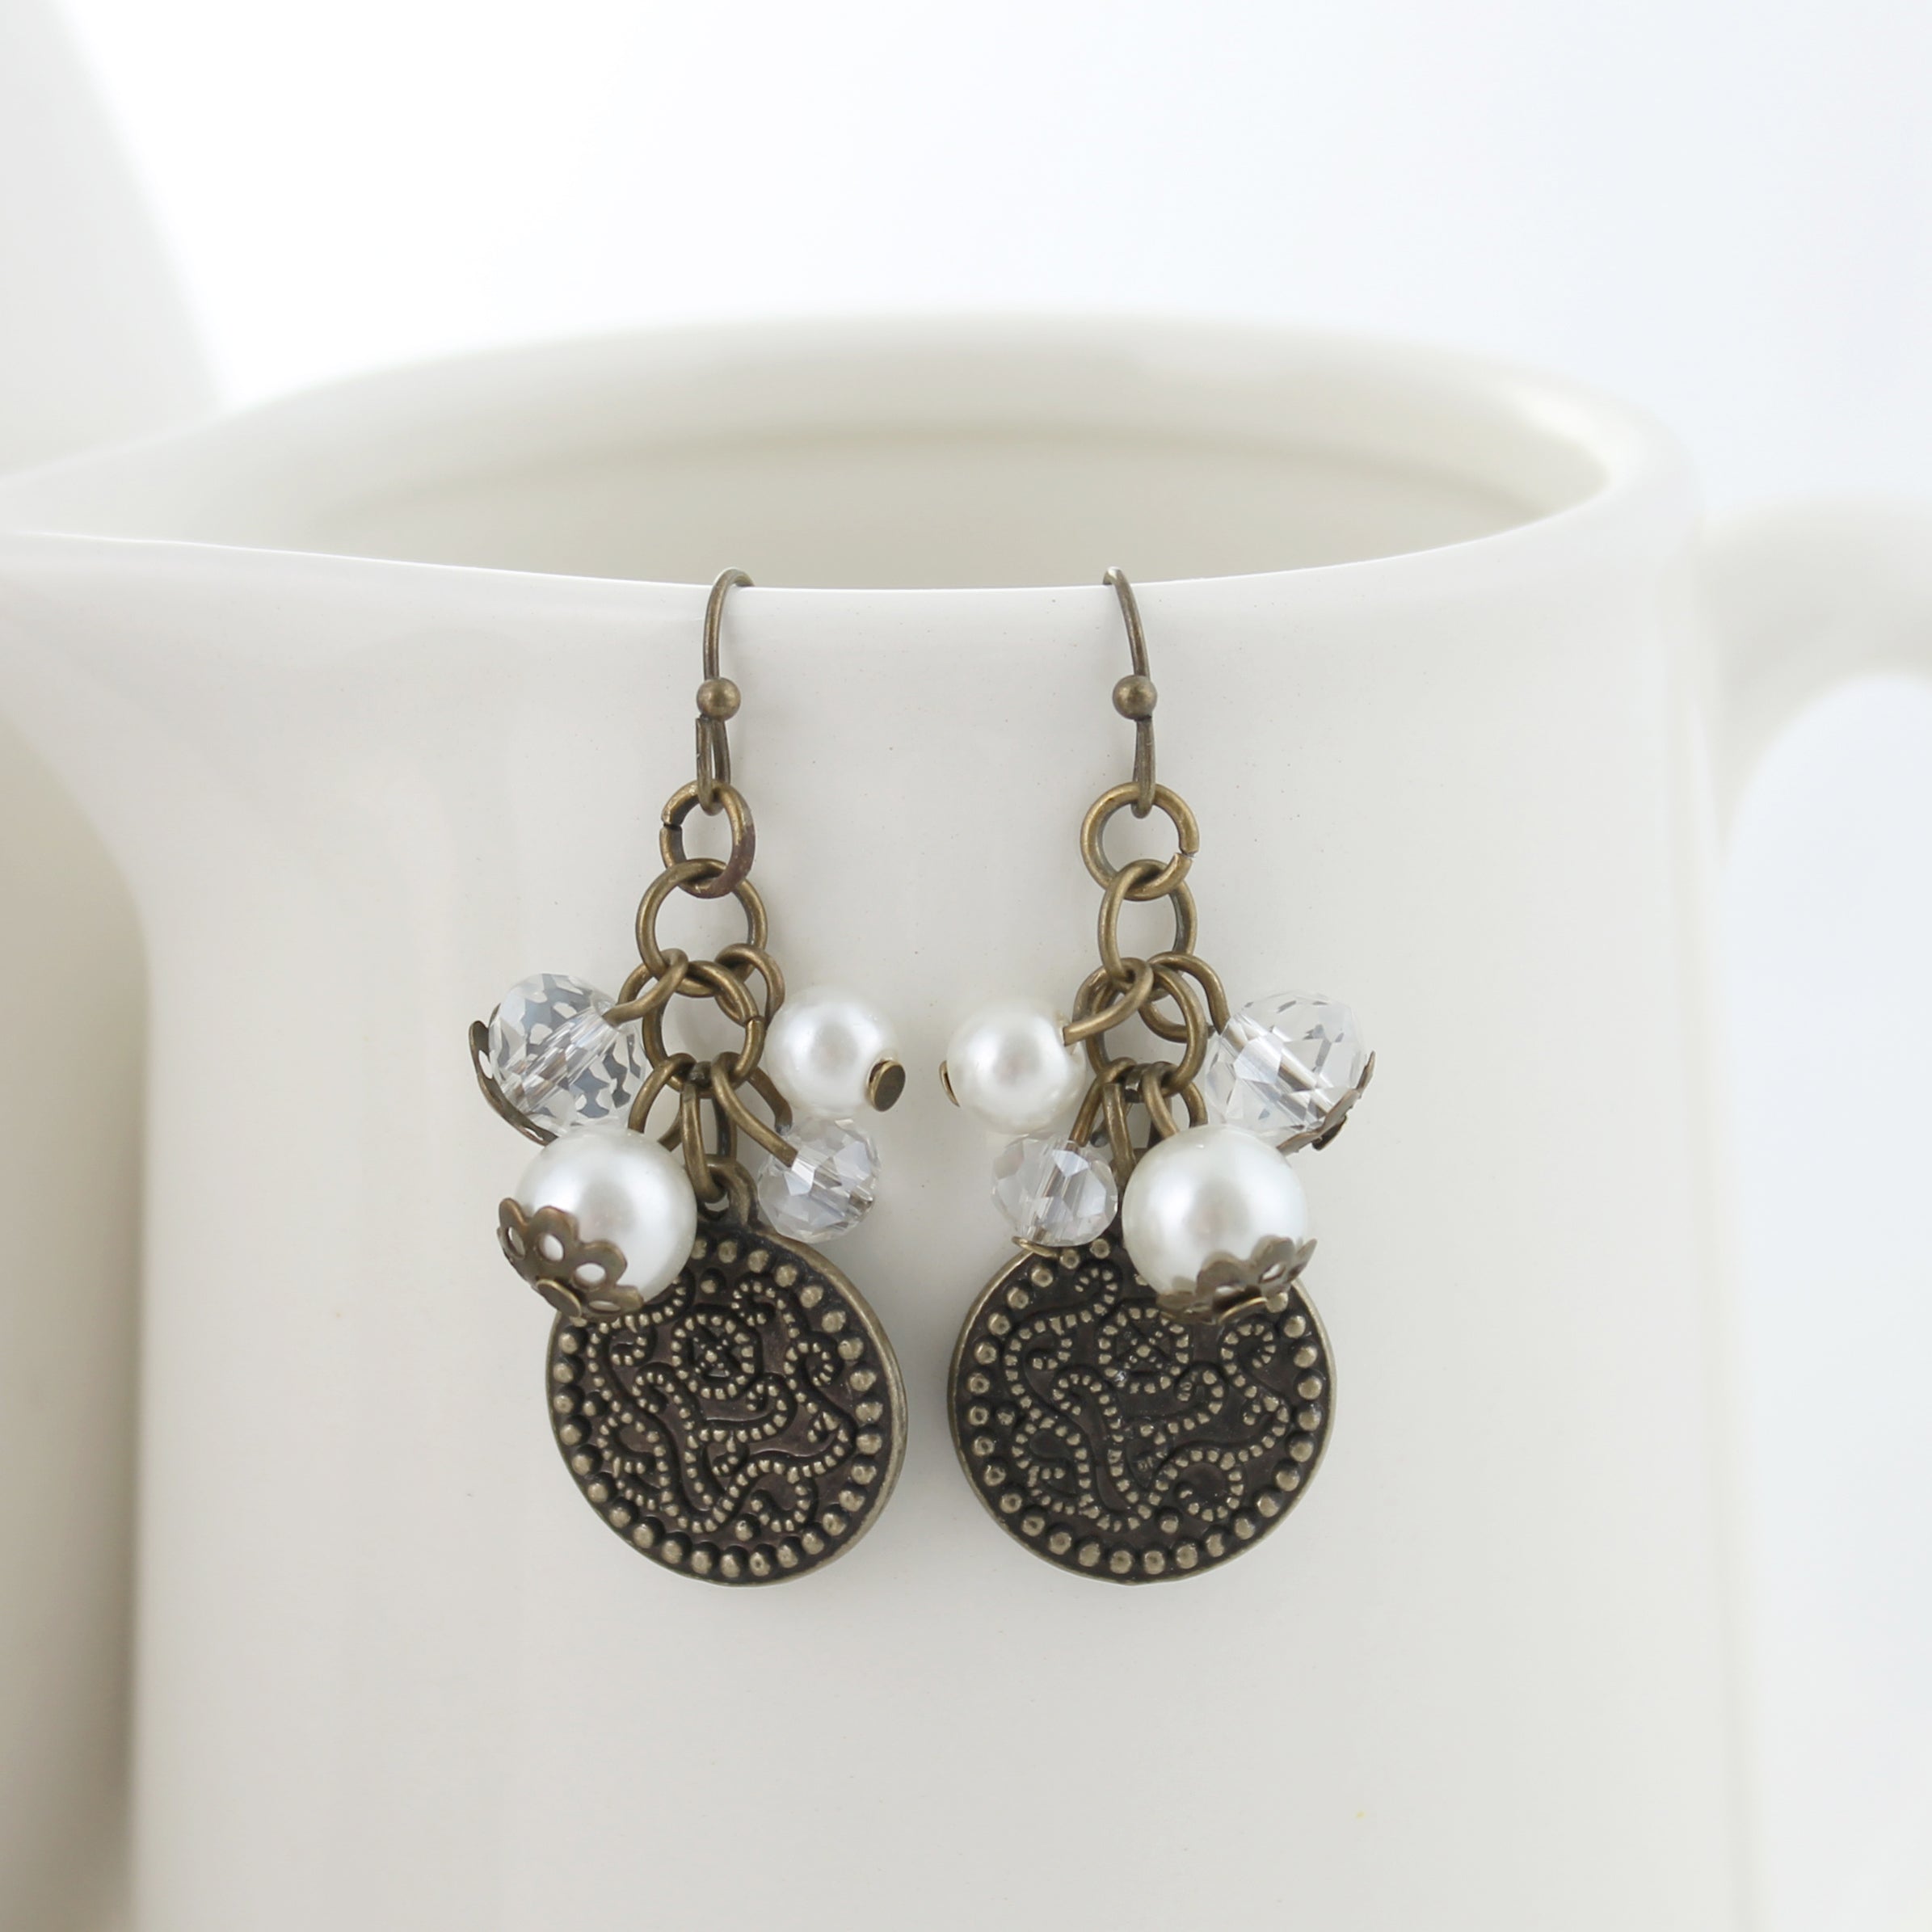 Buy Silver Earrings for Women by Arte Online | Ajio.com